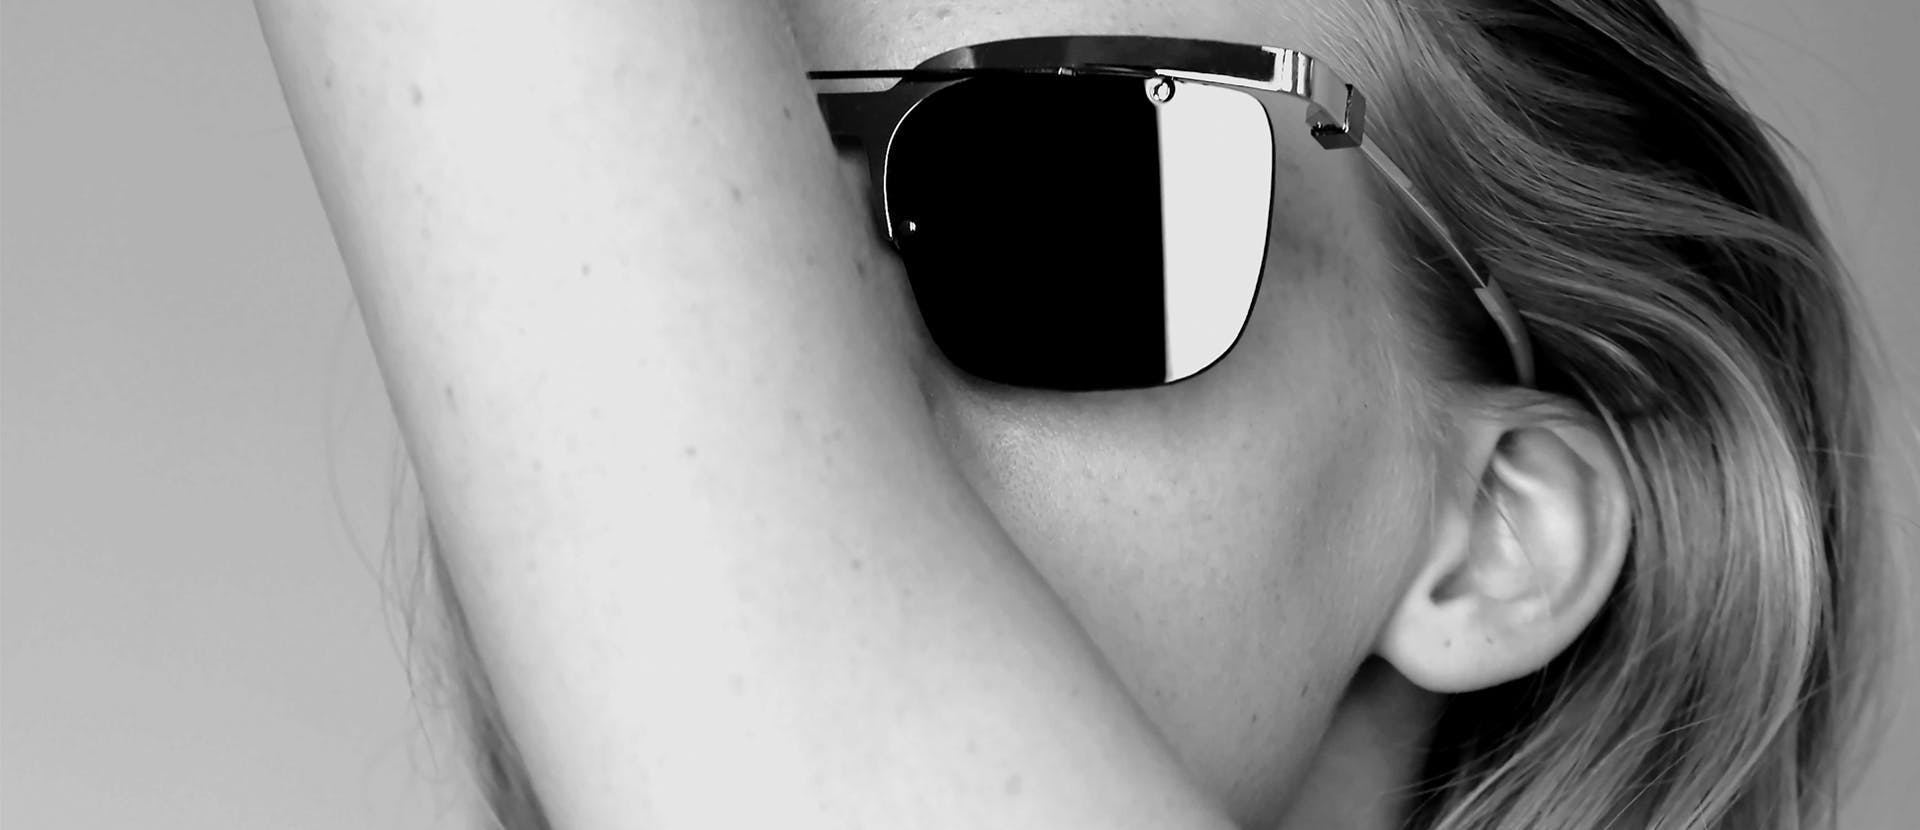 skin sunglasses accessory accessories person human face